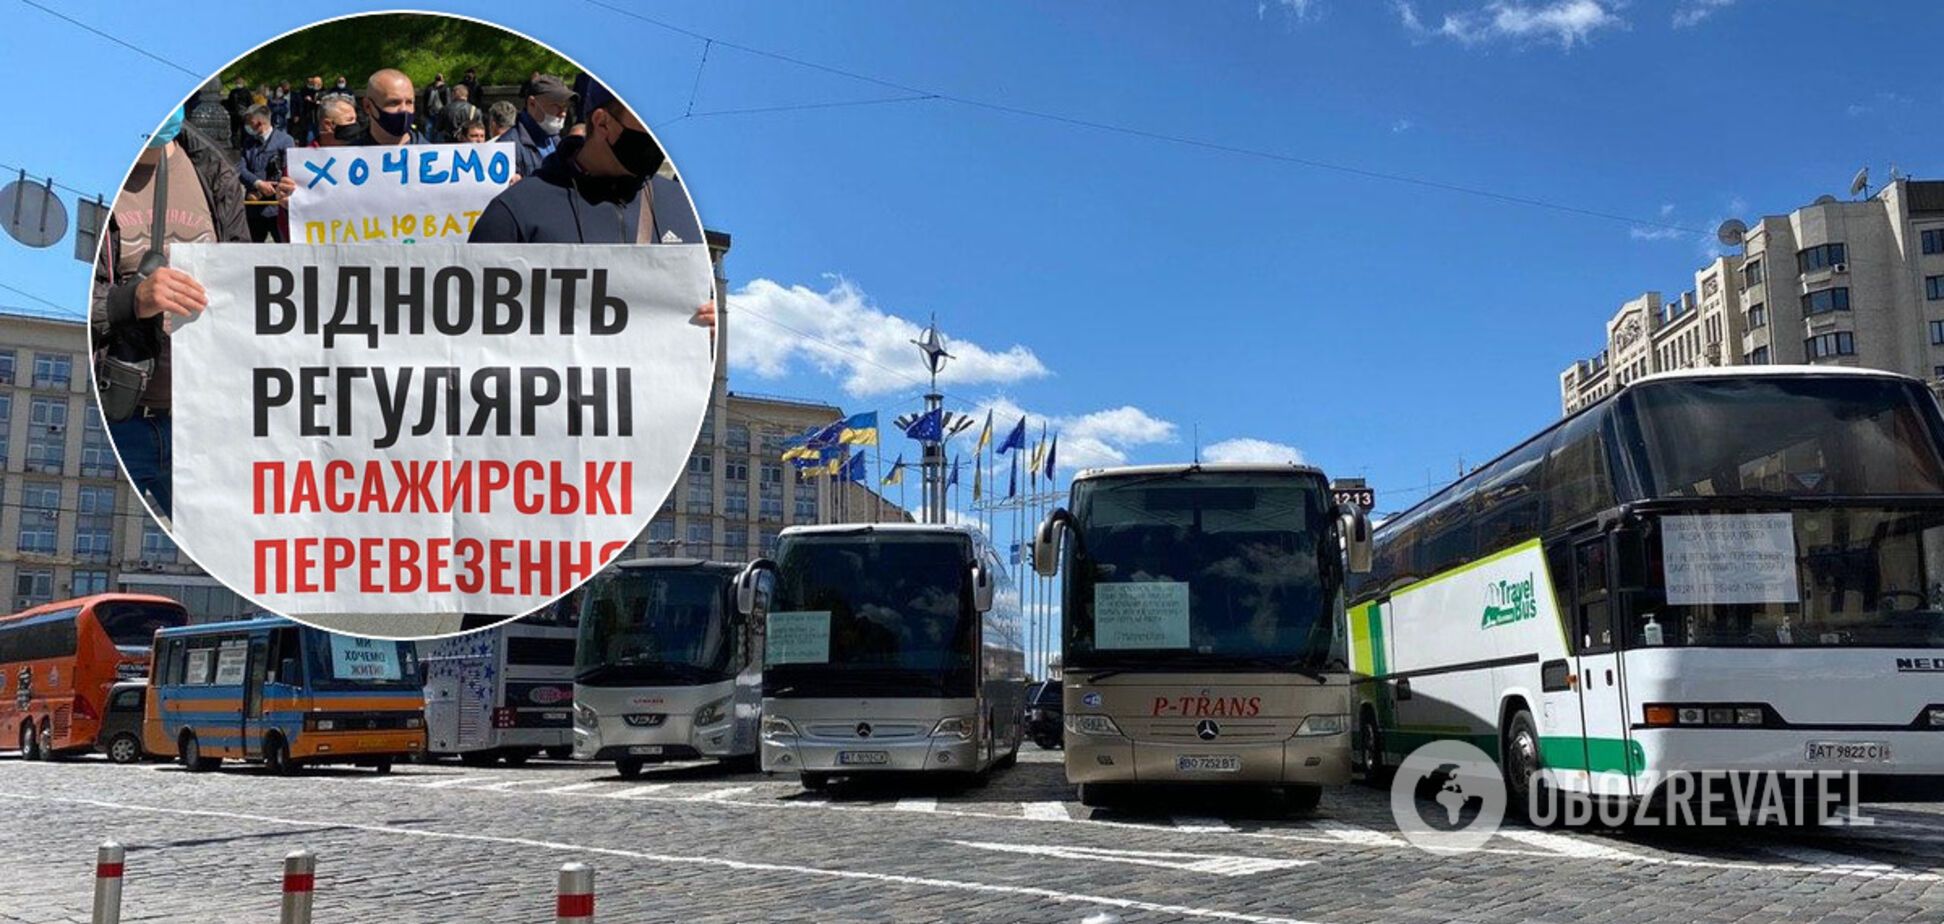 Кварцевание и 10 часов на сквозняке: когда запустят транспорт в Украине и что грозит пассажирам